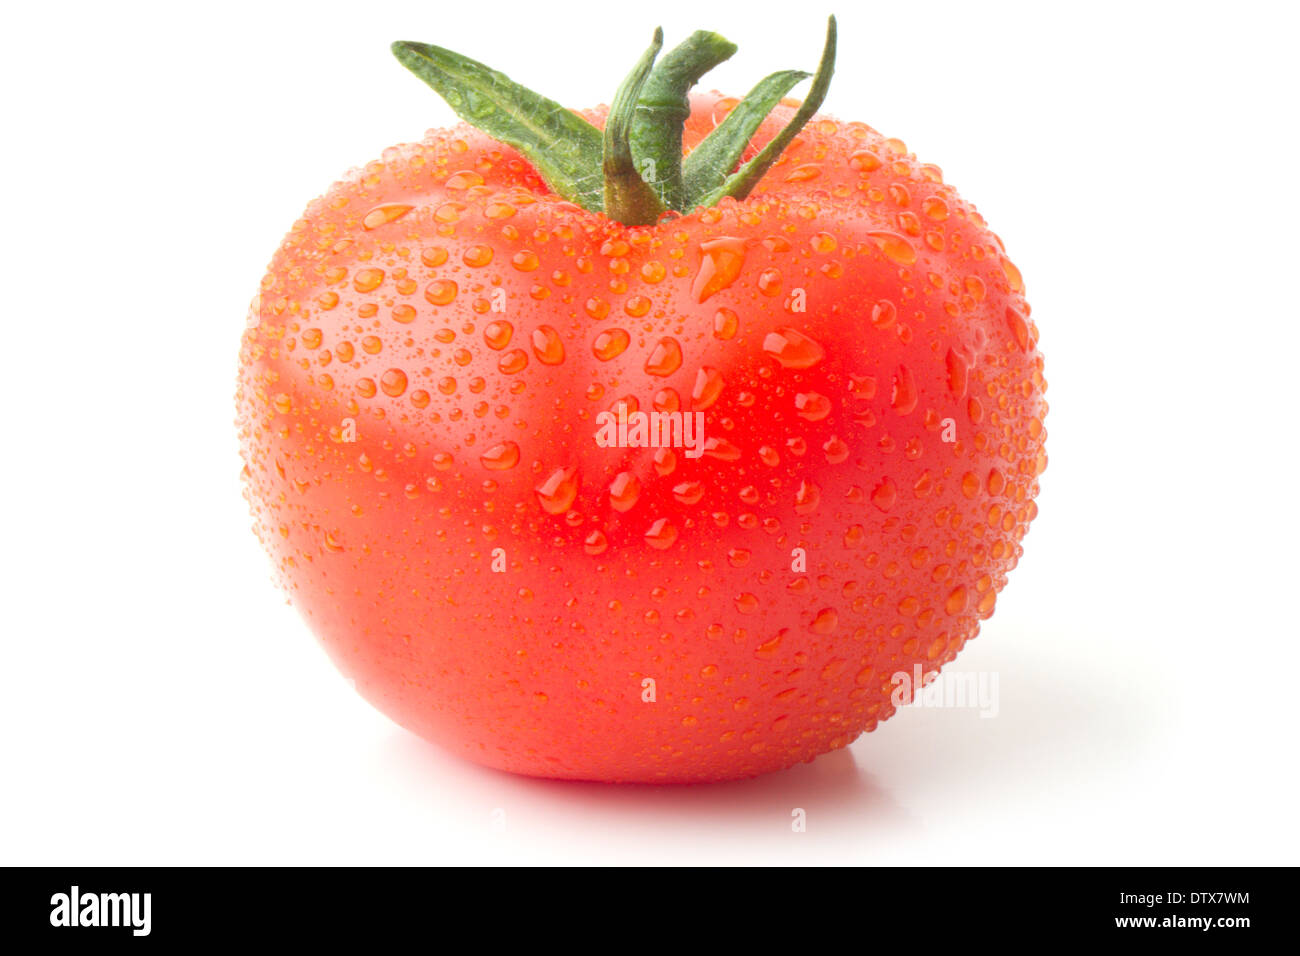 tomato Stock Photo